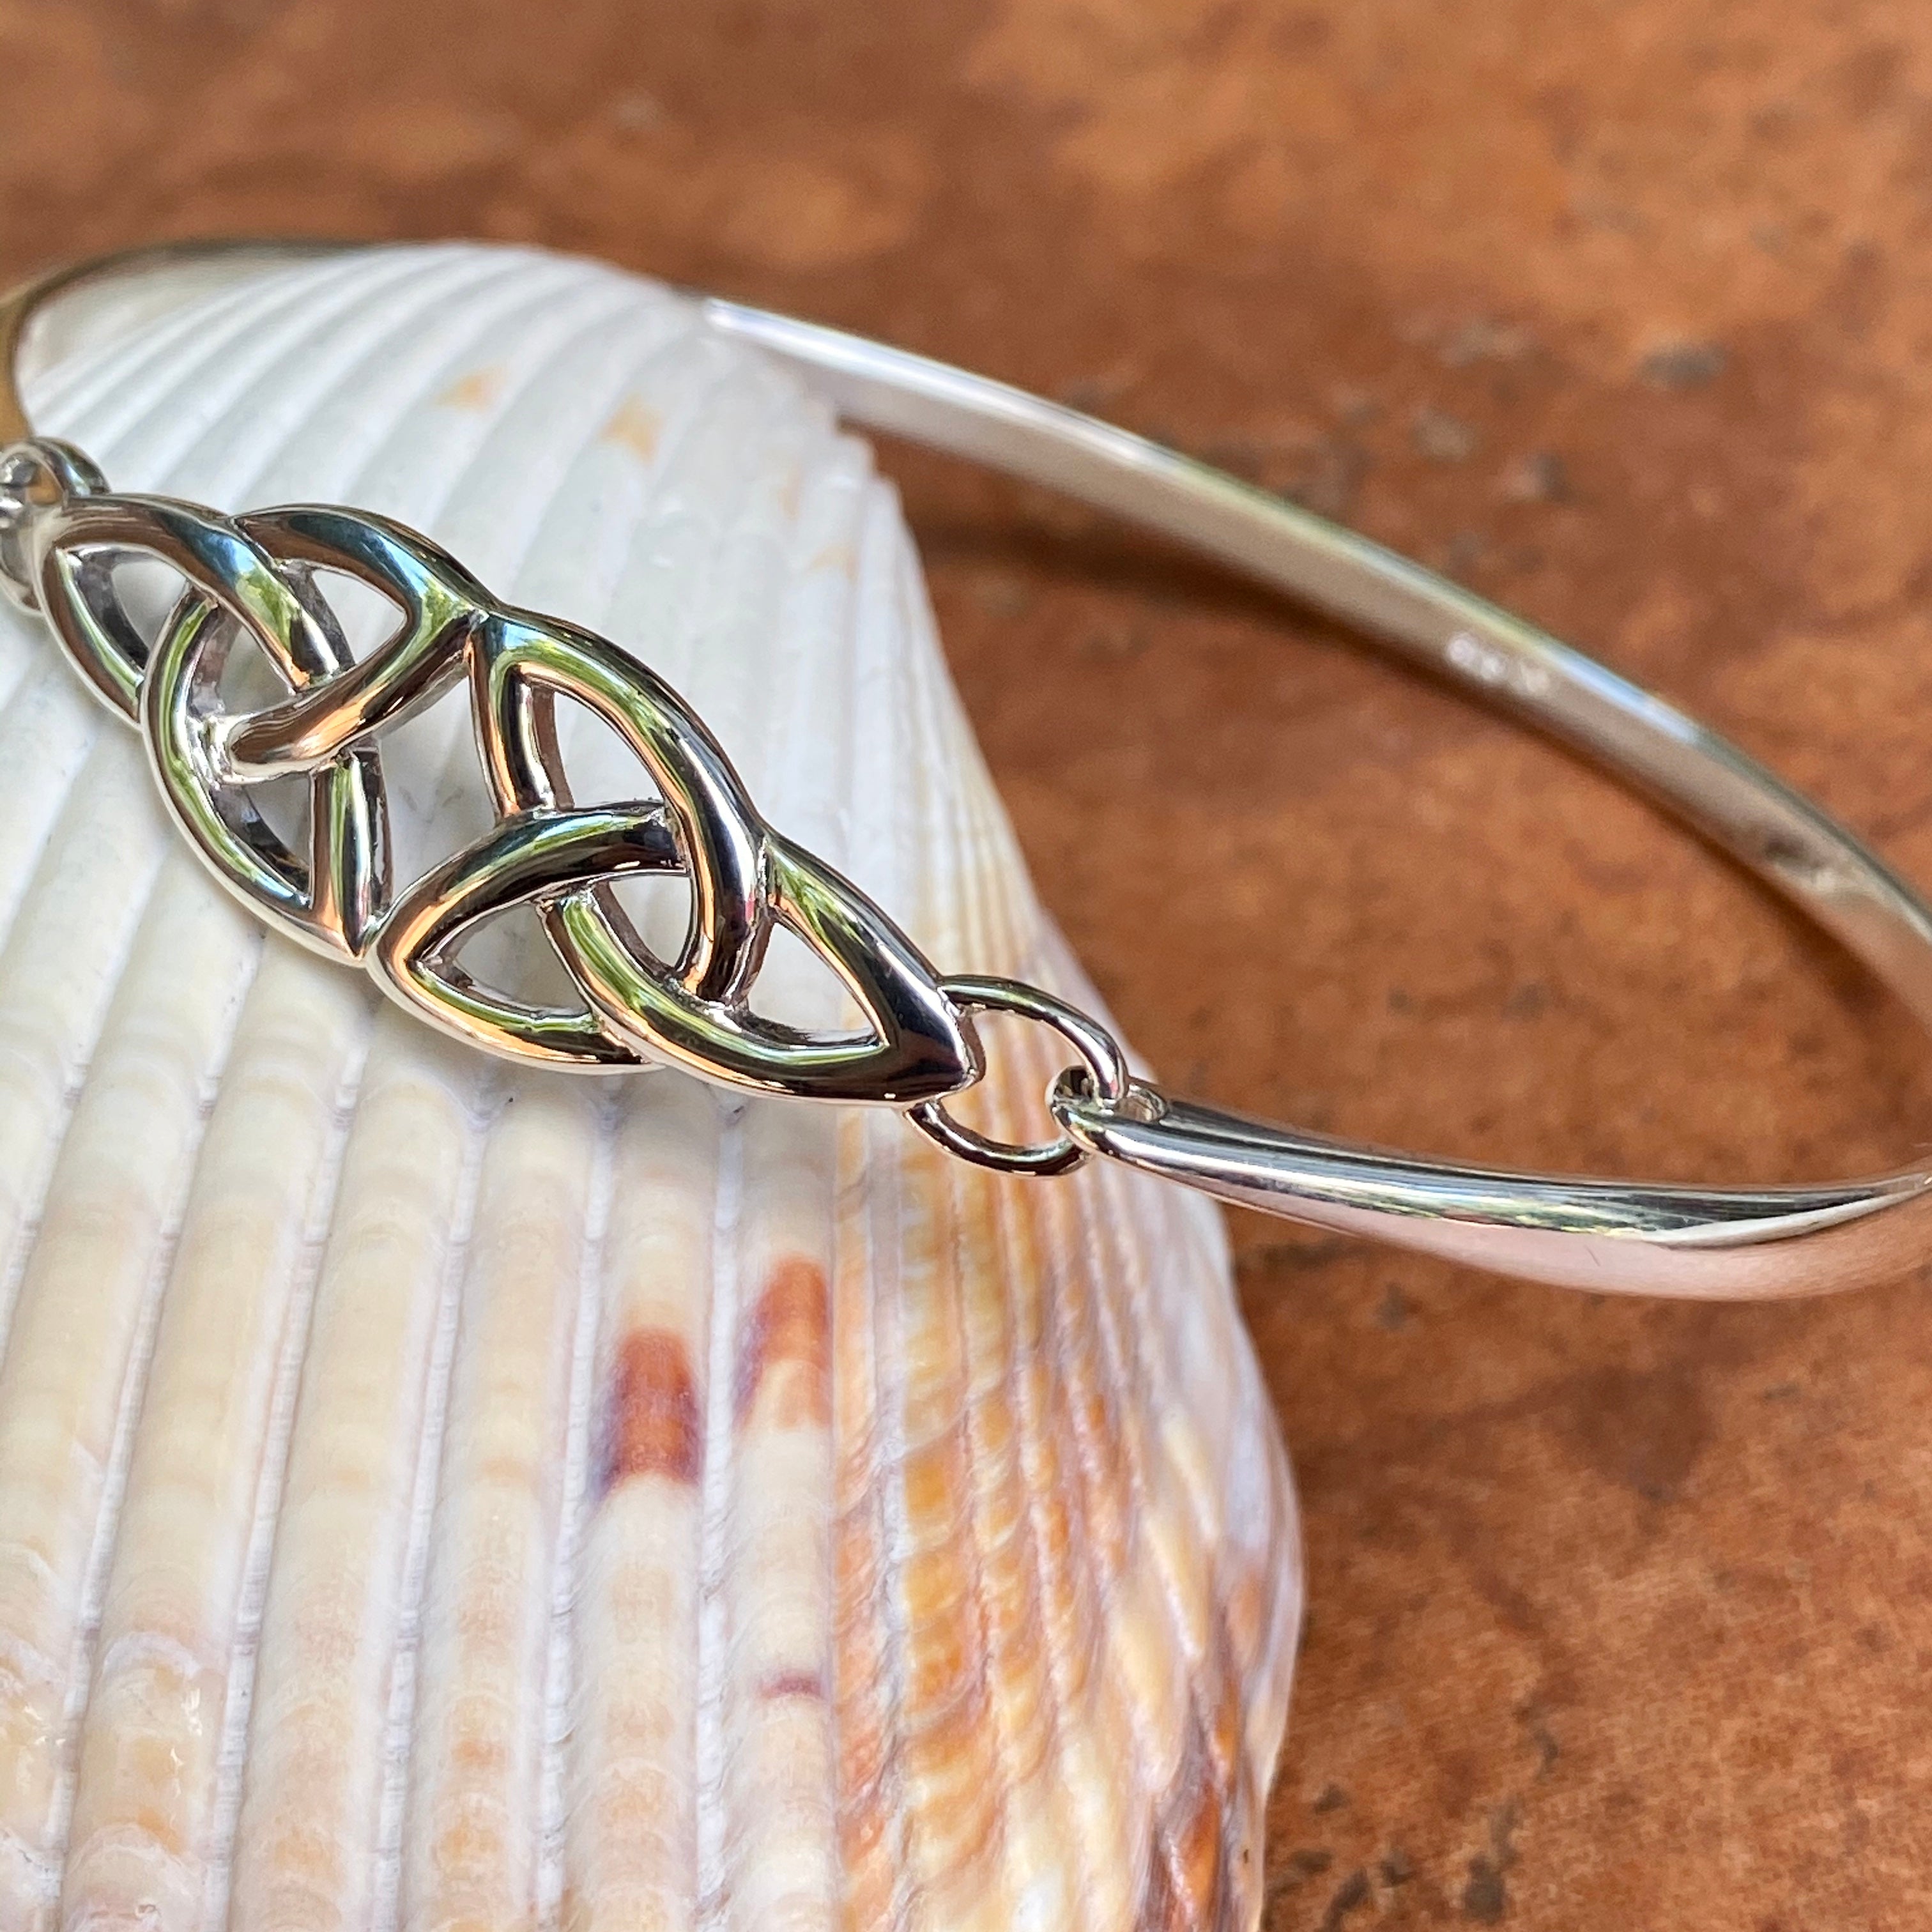 Men's Bracelet - Men's Leather Bracelet - Men's Celtic Bracelet - Men's  Jewelry - Men's Gift - Boyfriend Gift - Husband Gift - Guys Gift, —  Discovered